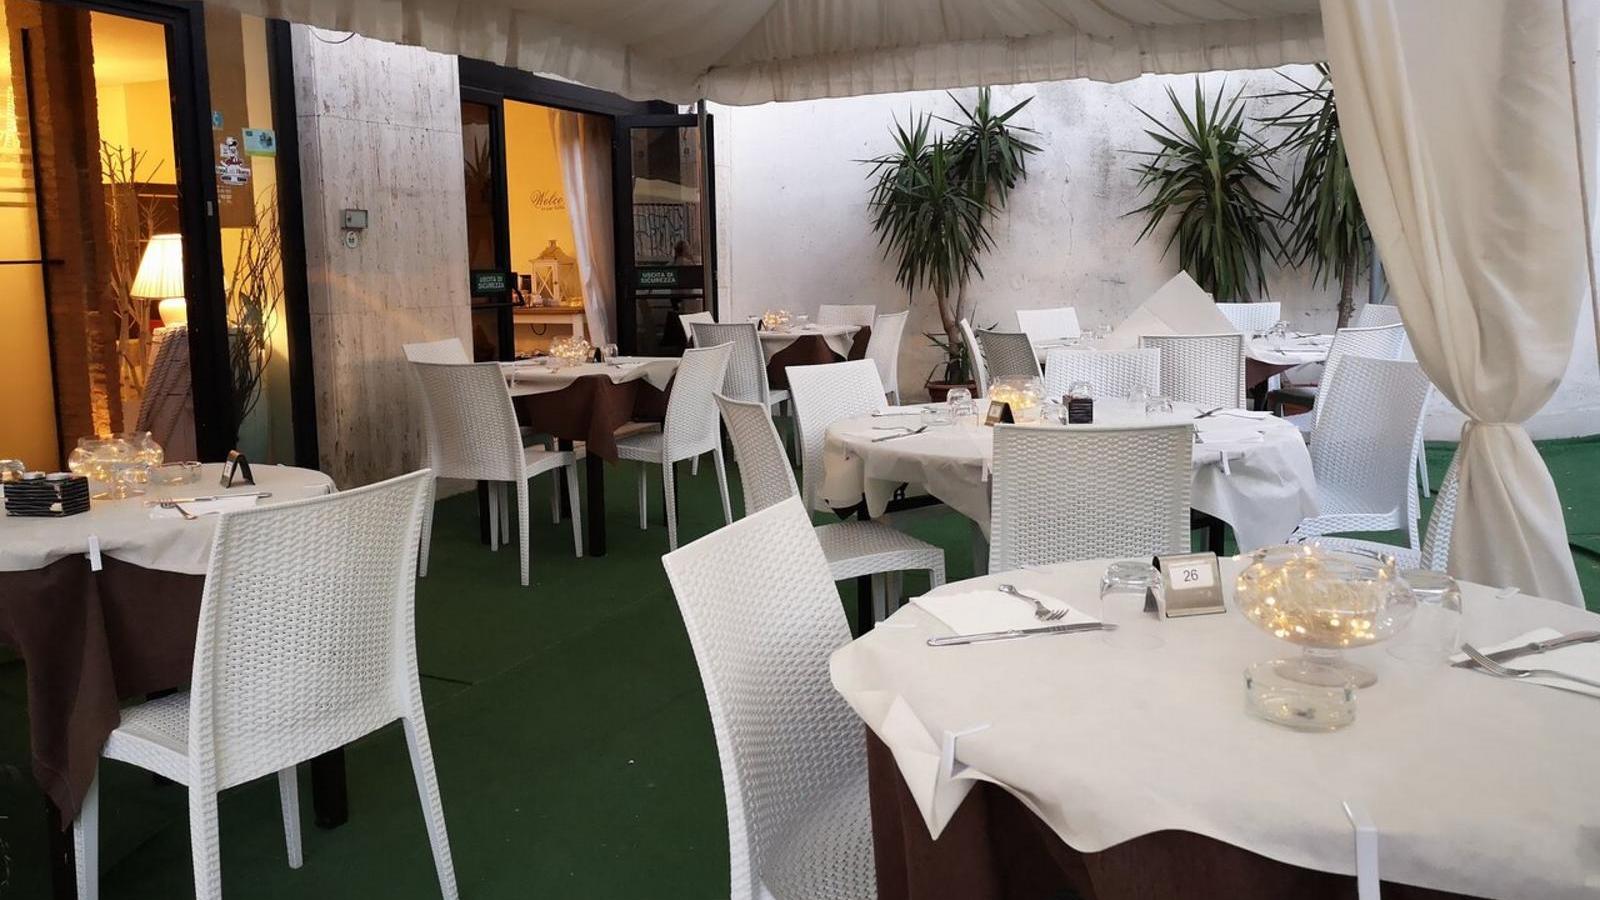 Miglior ristorante di Foggia - Cristallo | Localtourism.it